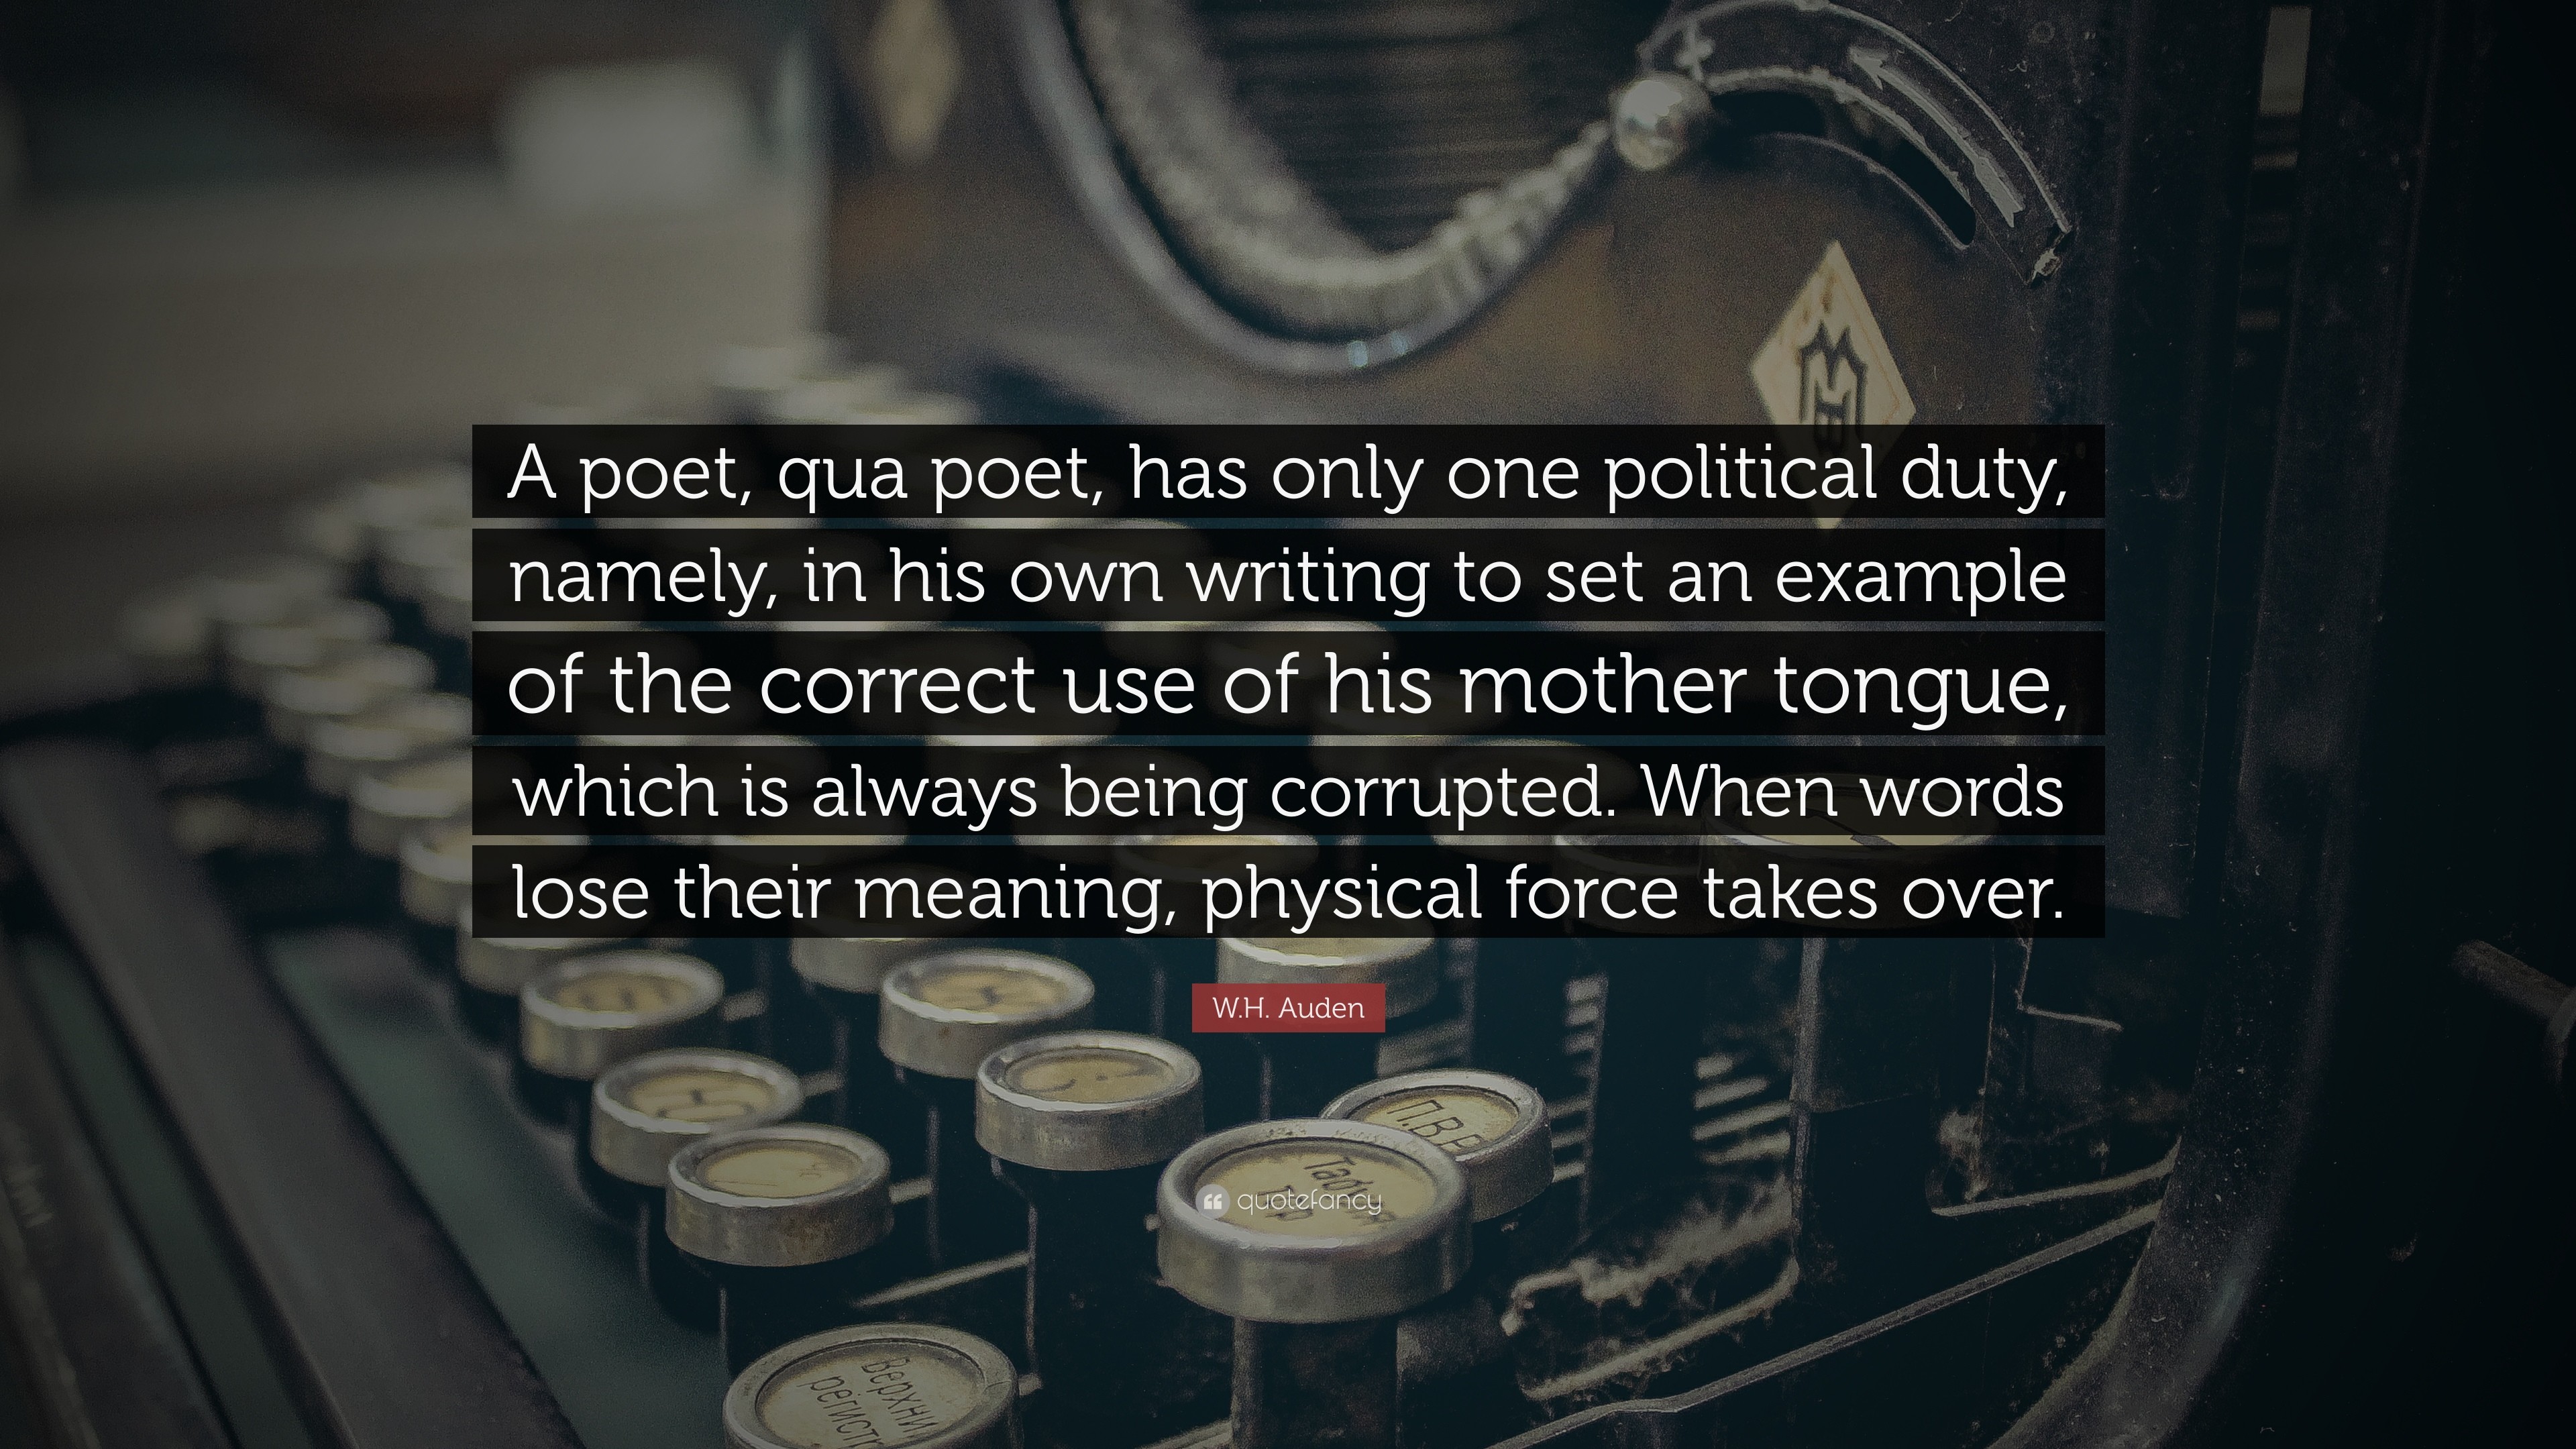 3840x2160 W.H. Auden Quote: “A poet, qua poet, has only one political duty